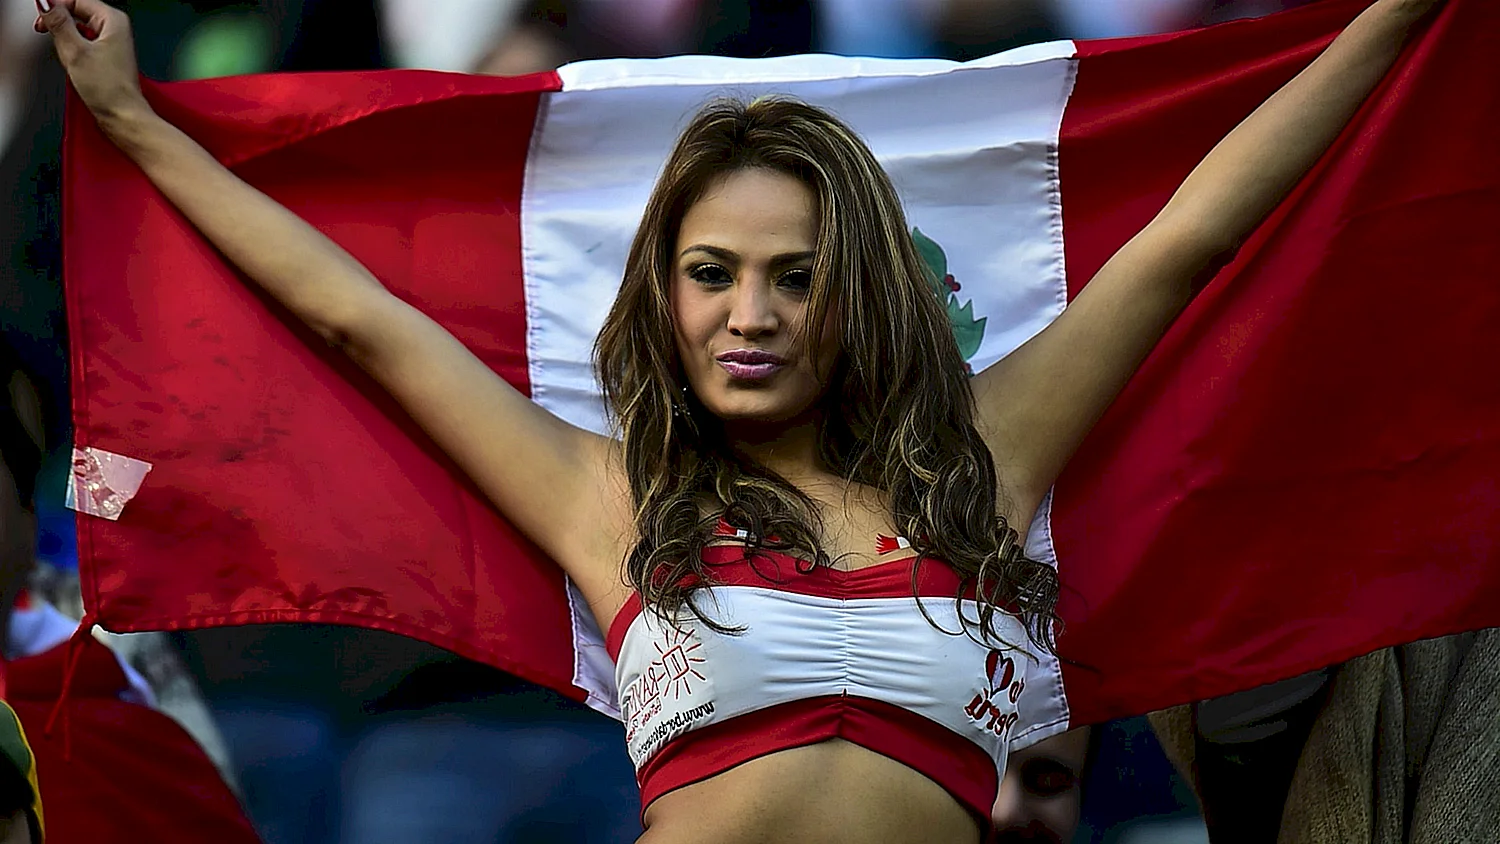 Чемпионат мира по футболу 2018 девушки болельщицы Перу